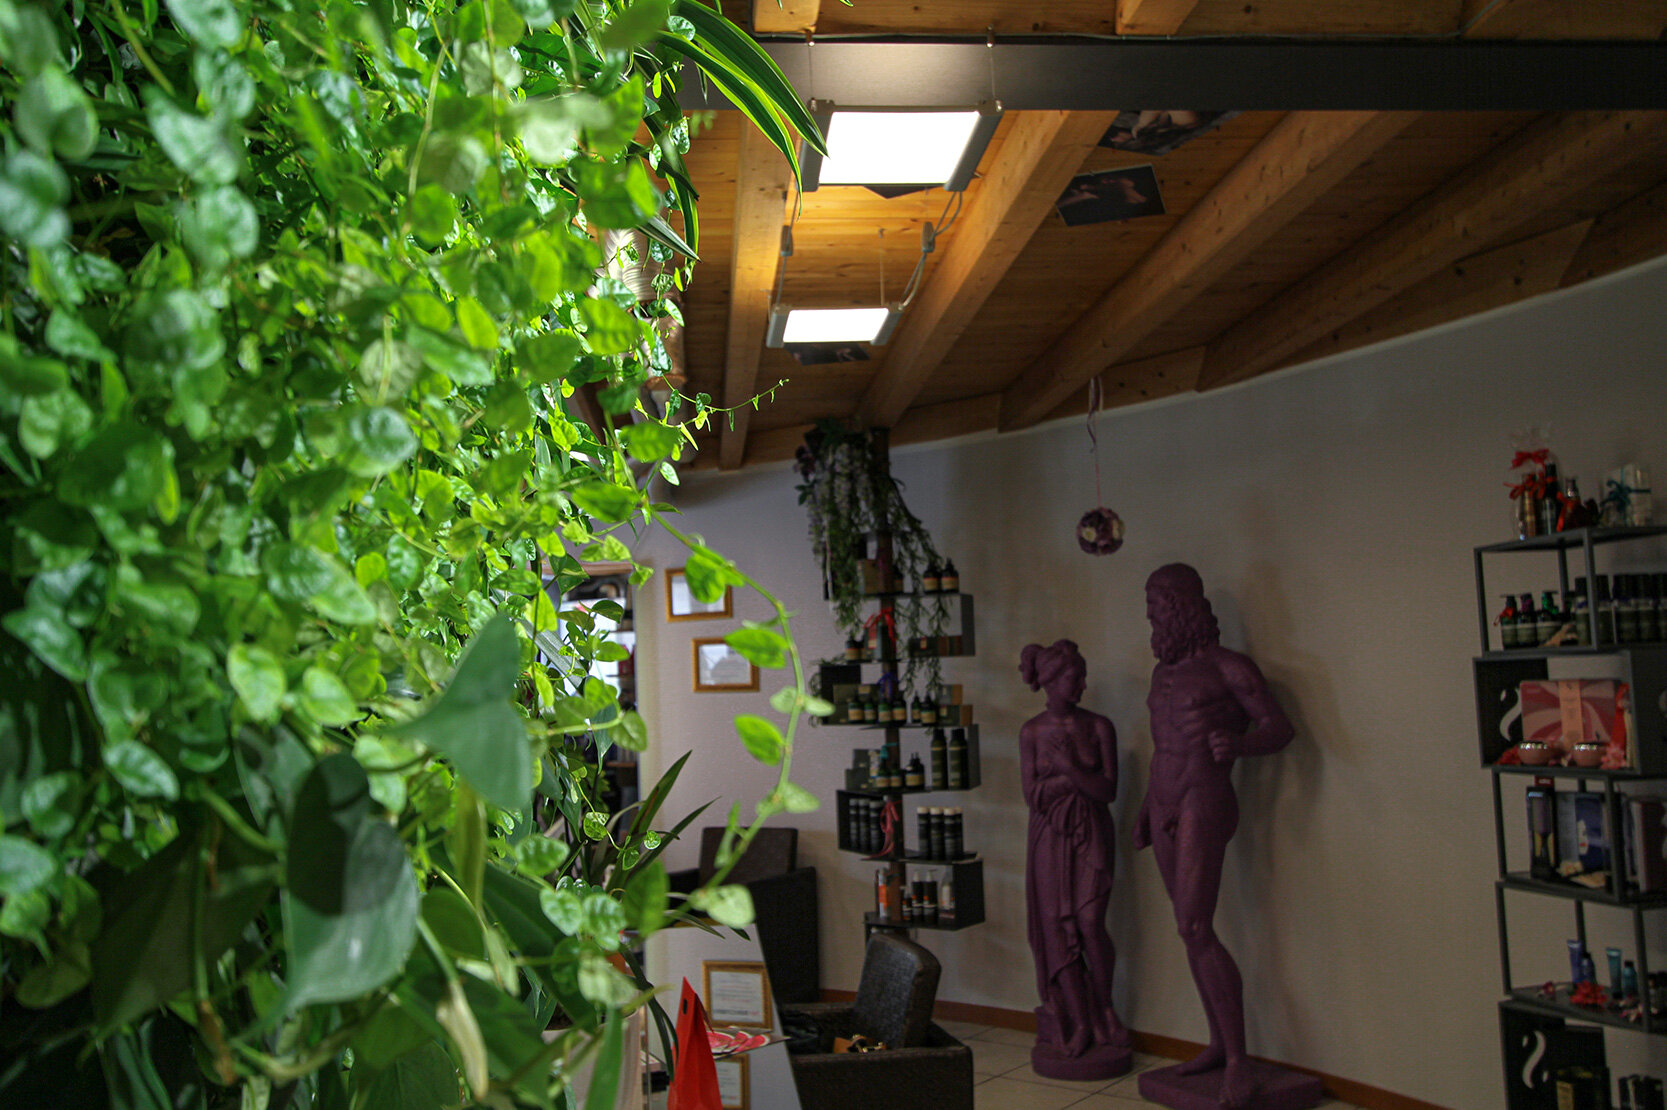 target-fashion-garden-vertical-wall-green-sundar-italia-016.jpg